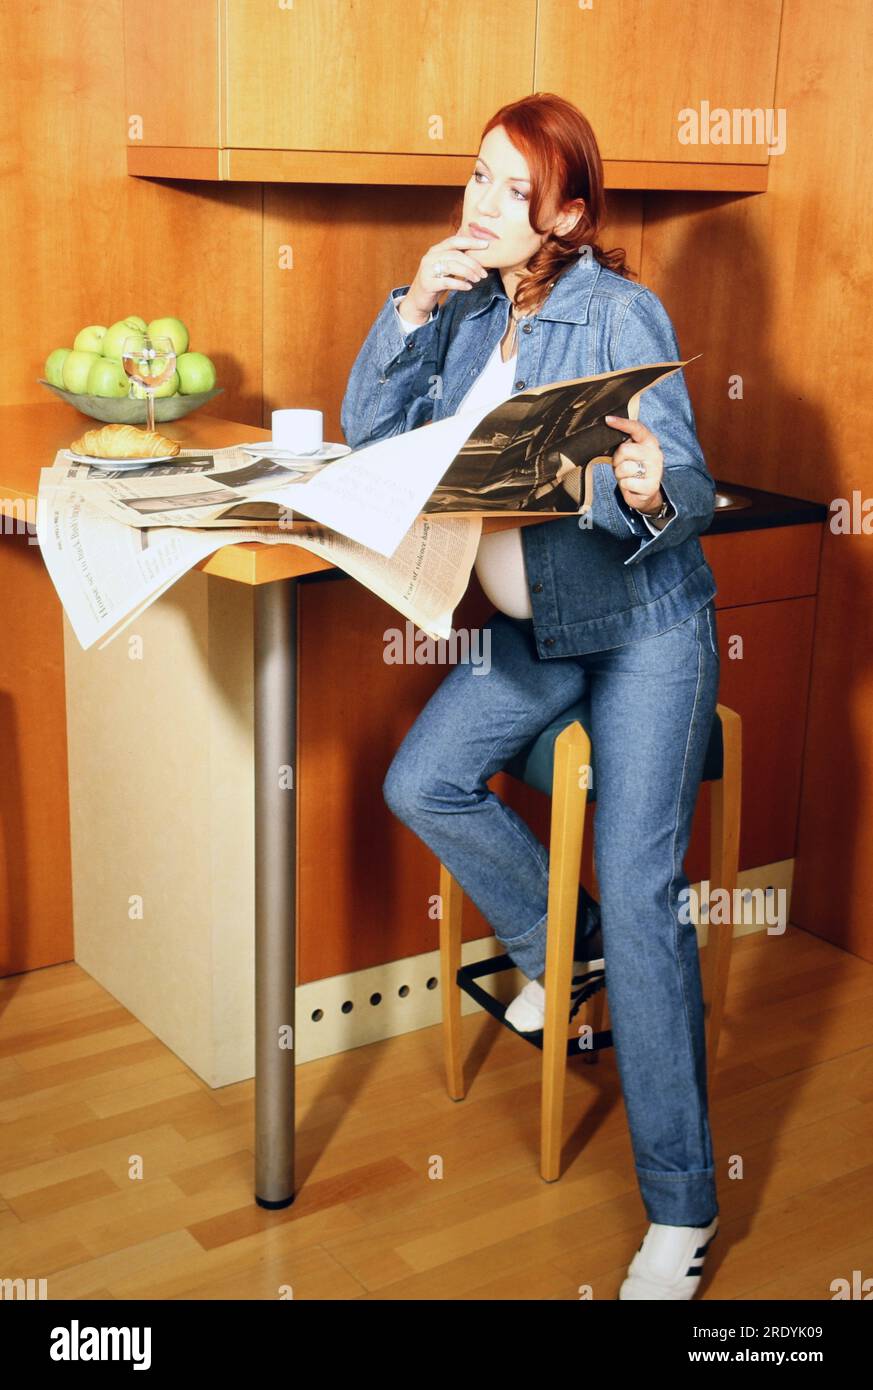 Andrea Horn, deutsche Fernsehmoderatorin, bei einem Fotoshooting zuhause in Magdeburg bei der Lektüre der Tagespresse, Deutschland 2001. Stock Photo